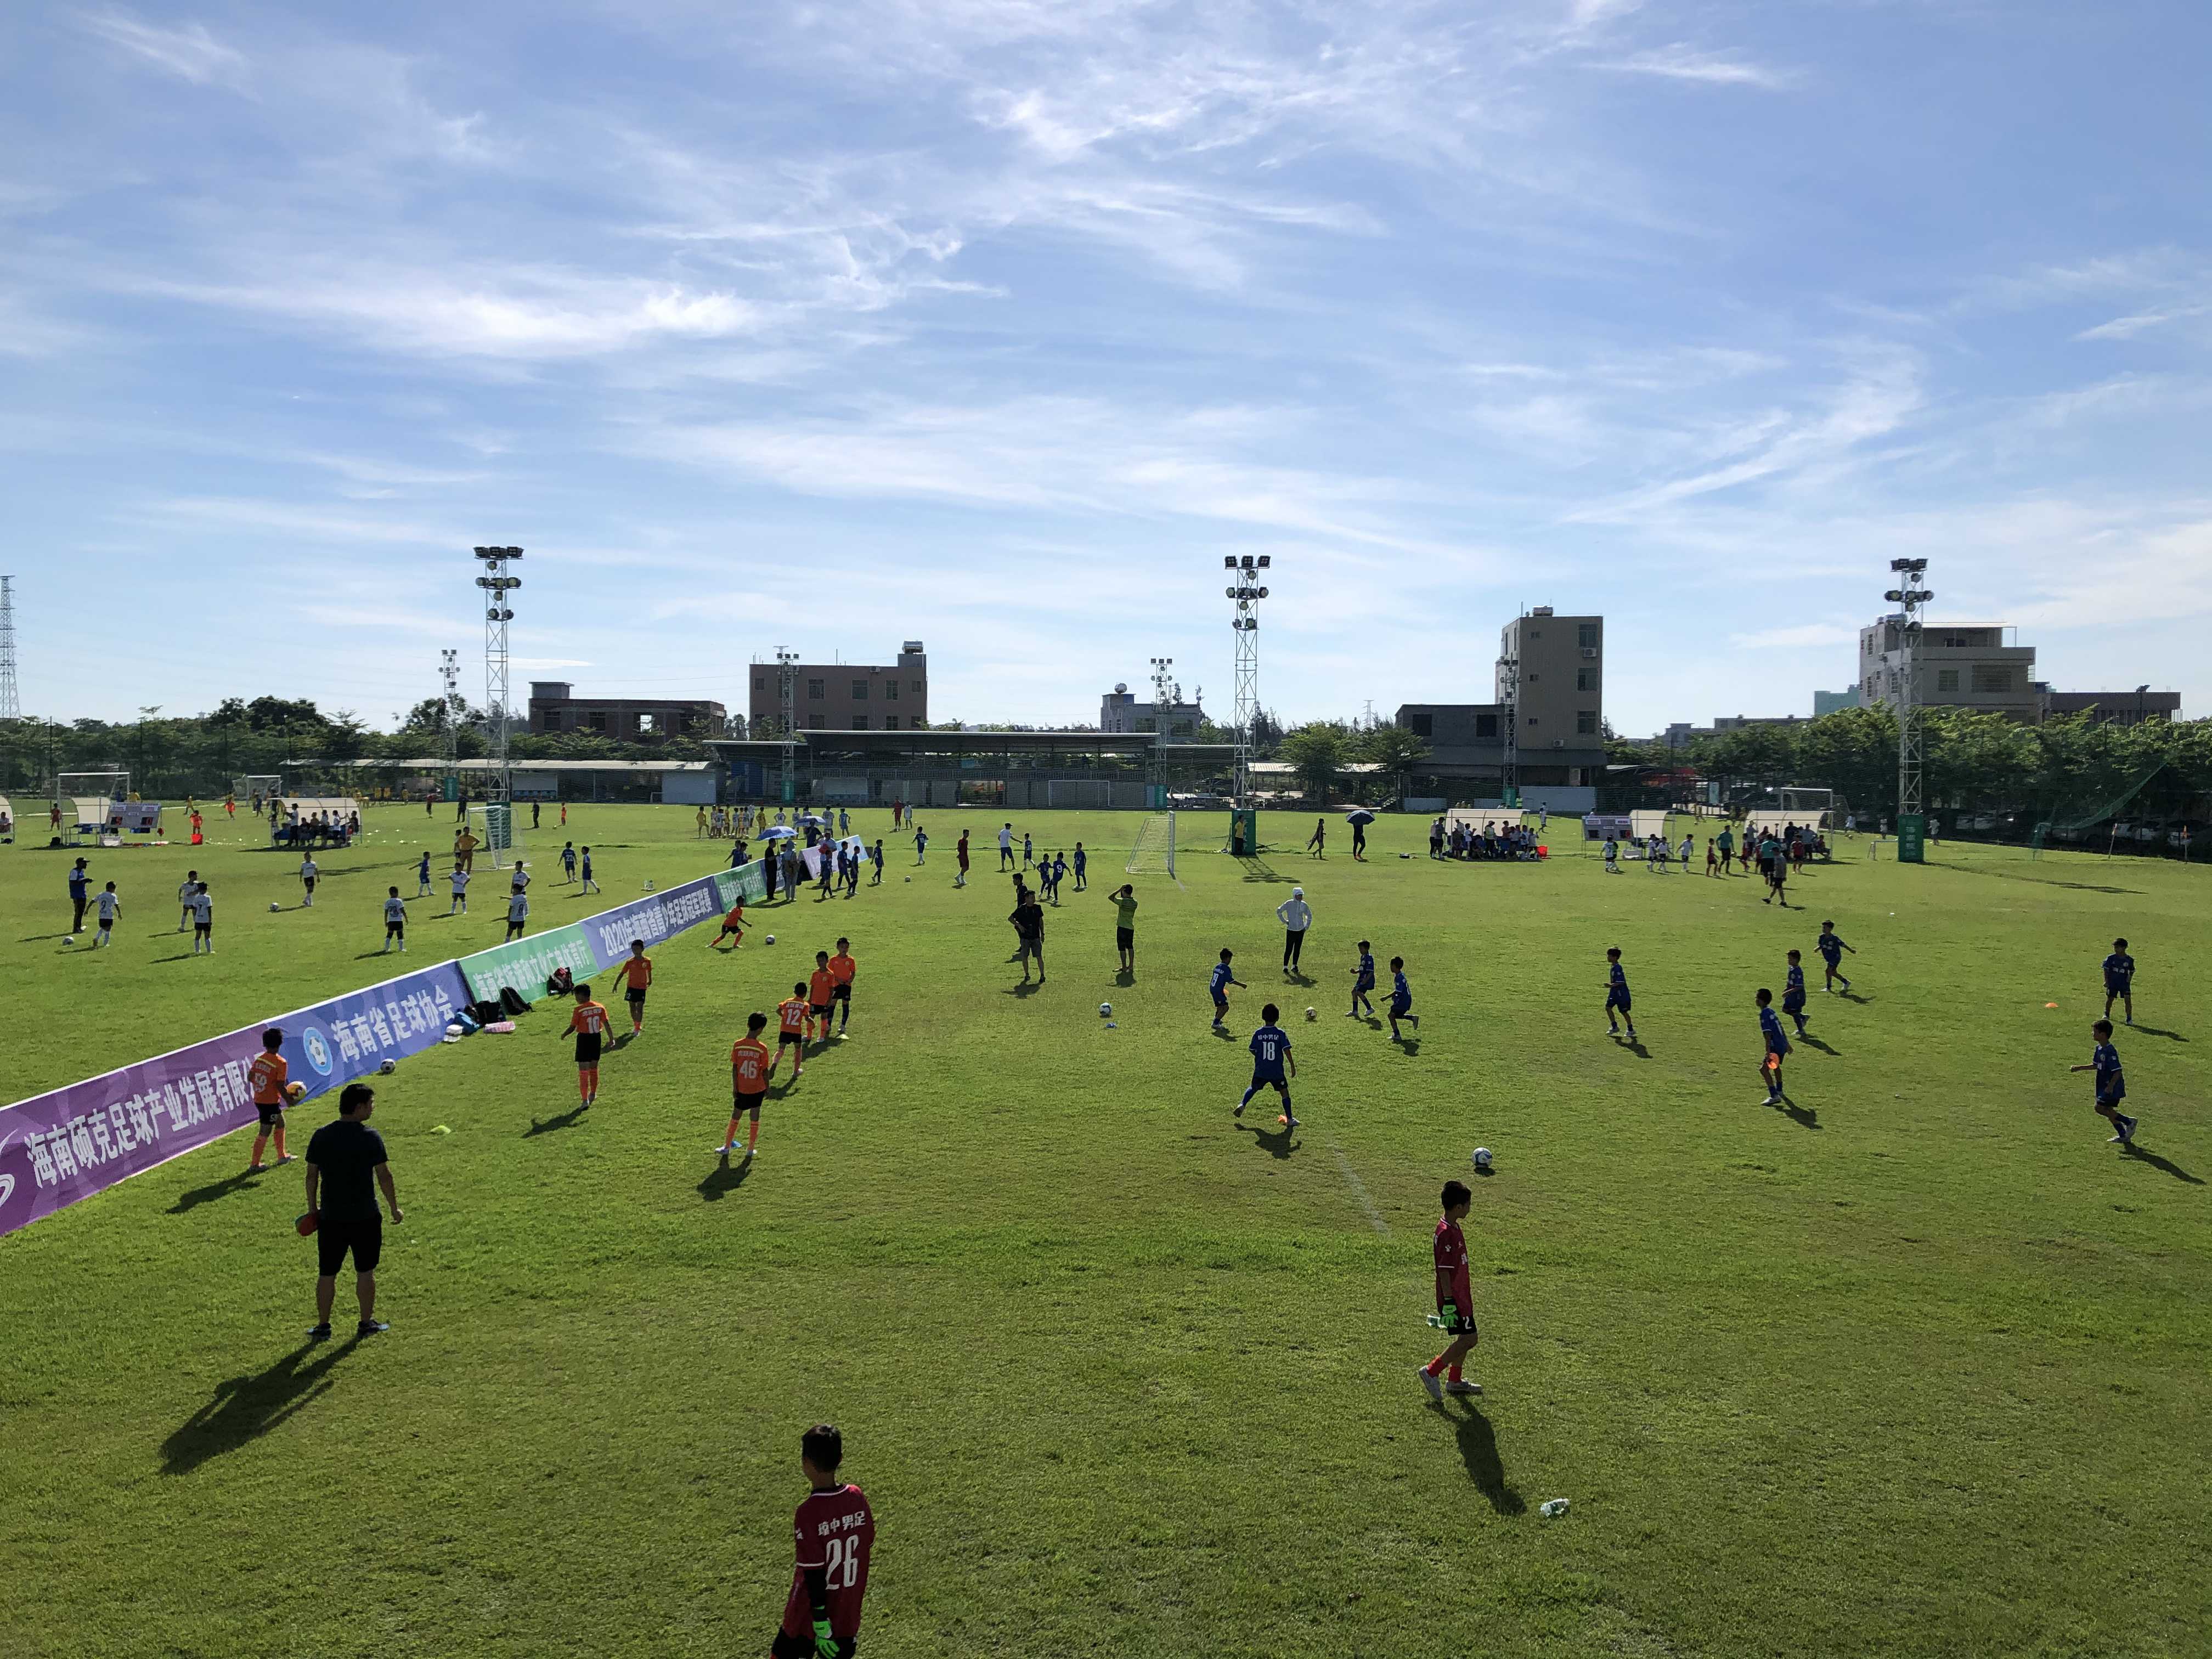 经过近1个月的角逐，“硕克杯”2020年海南省青少年足球冠军联赛（U6、U7、U8、U9、U10组）5月31日在省足协裕东基地结束。